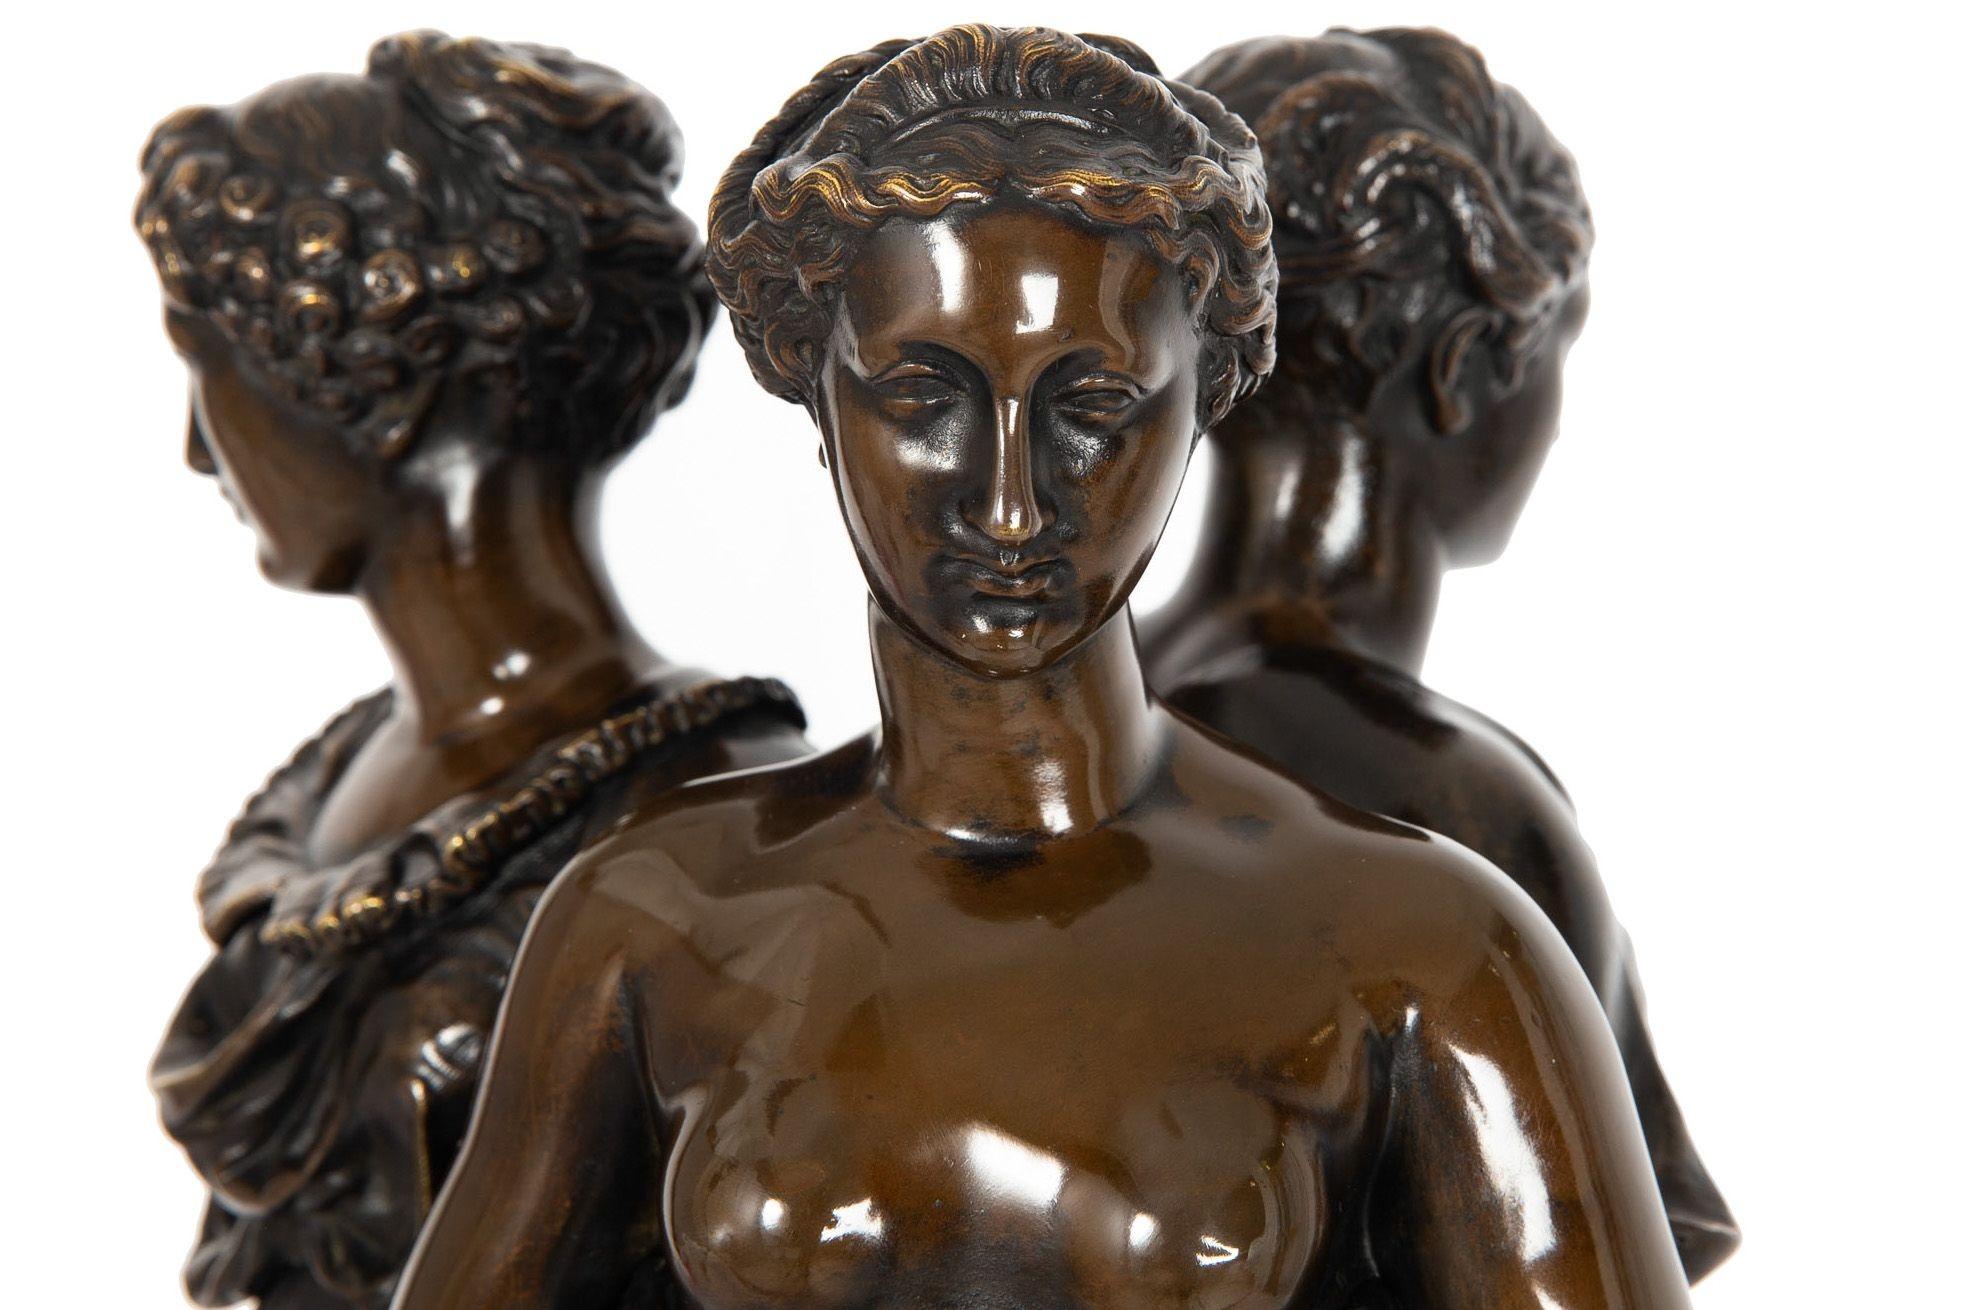 French Antique Bronze Sculpture “Three Graces” after Germain Pilon For Sale 2